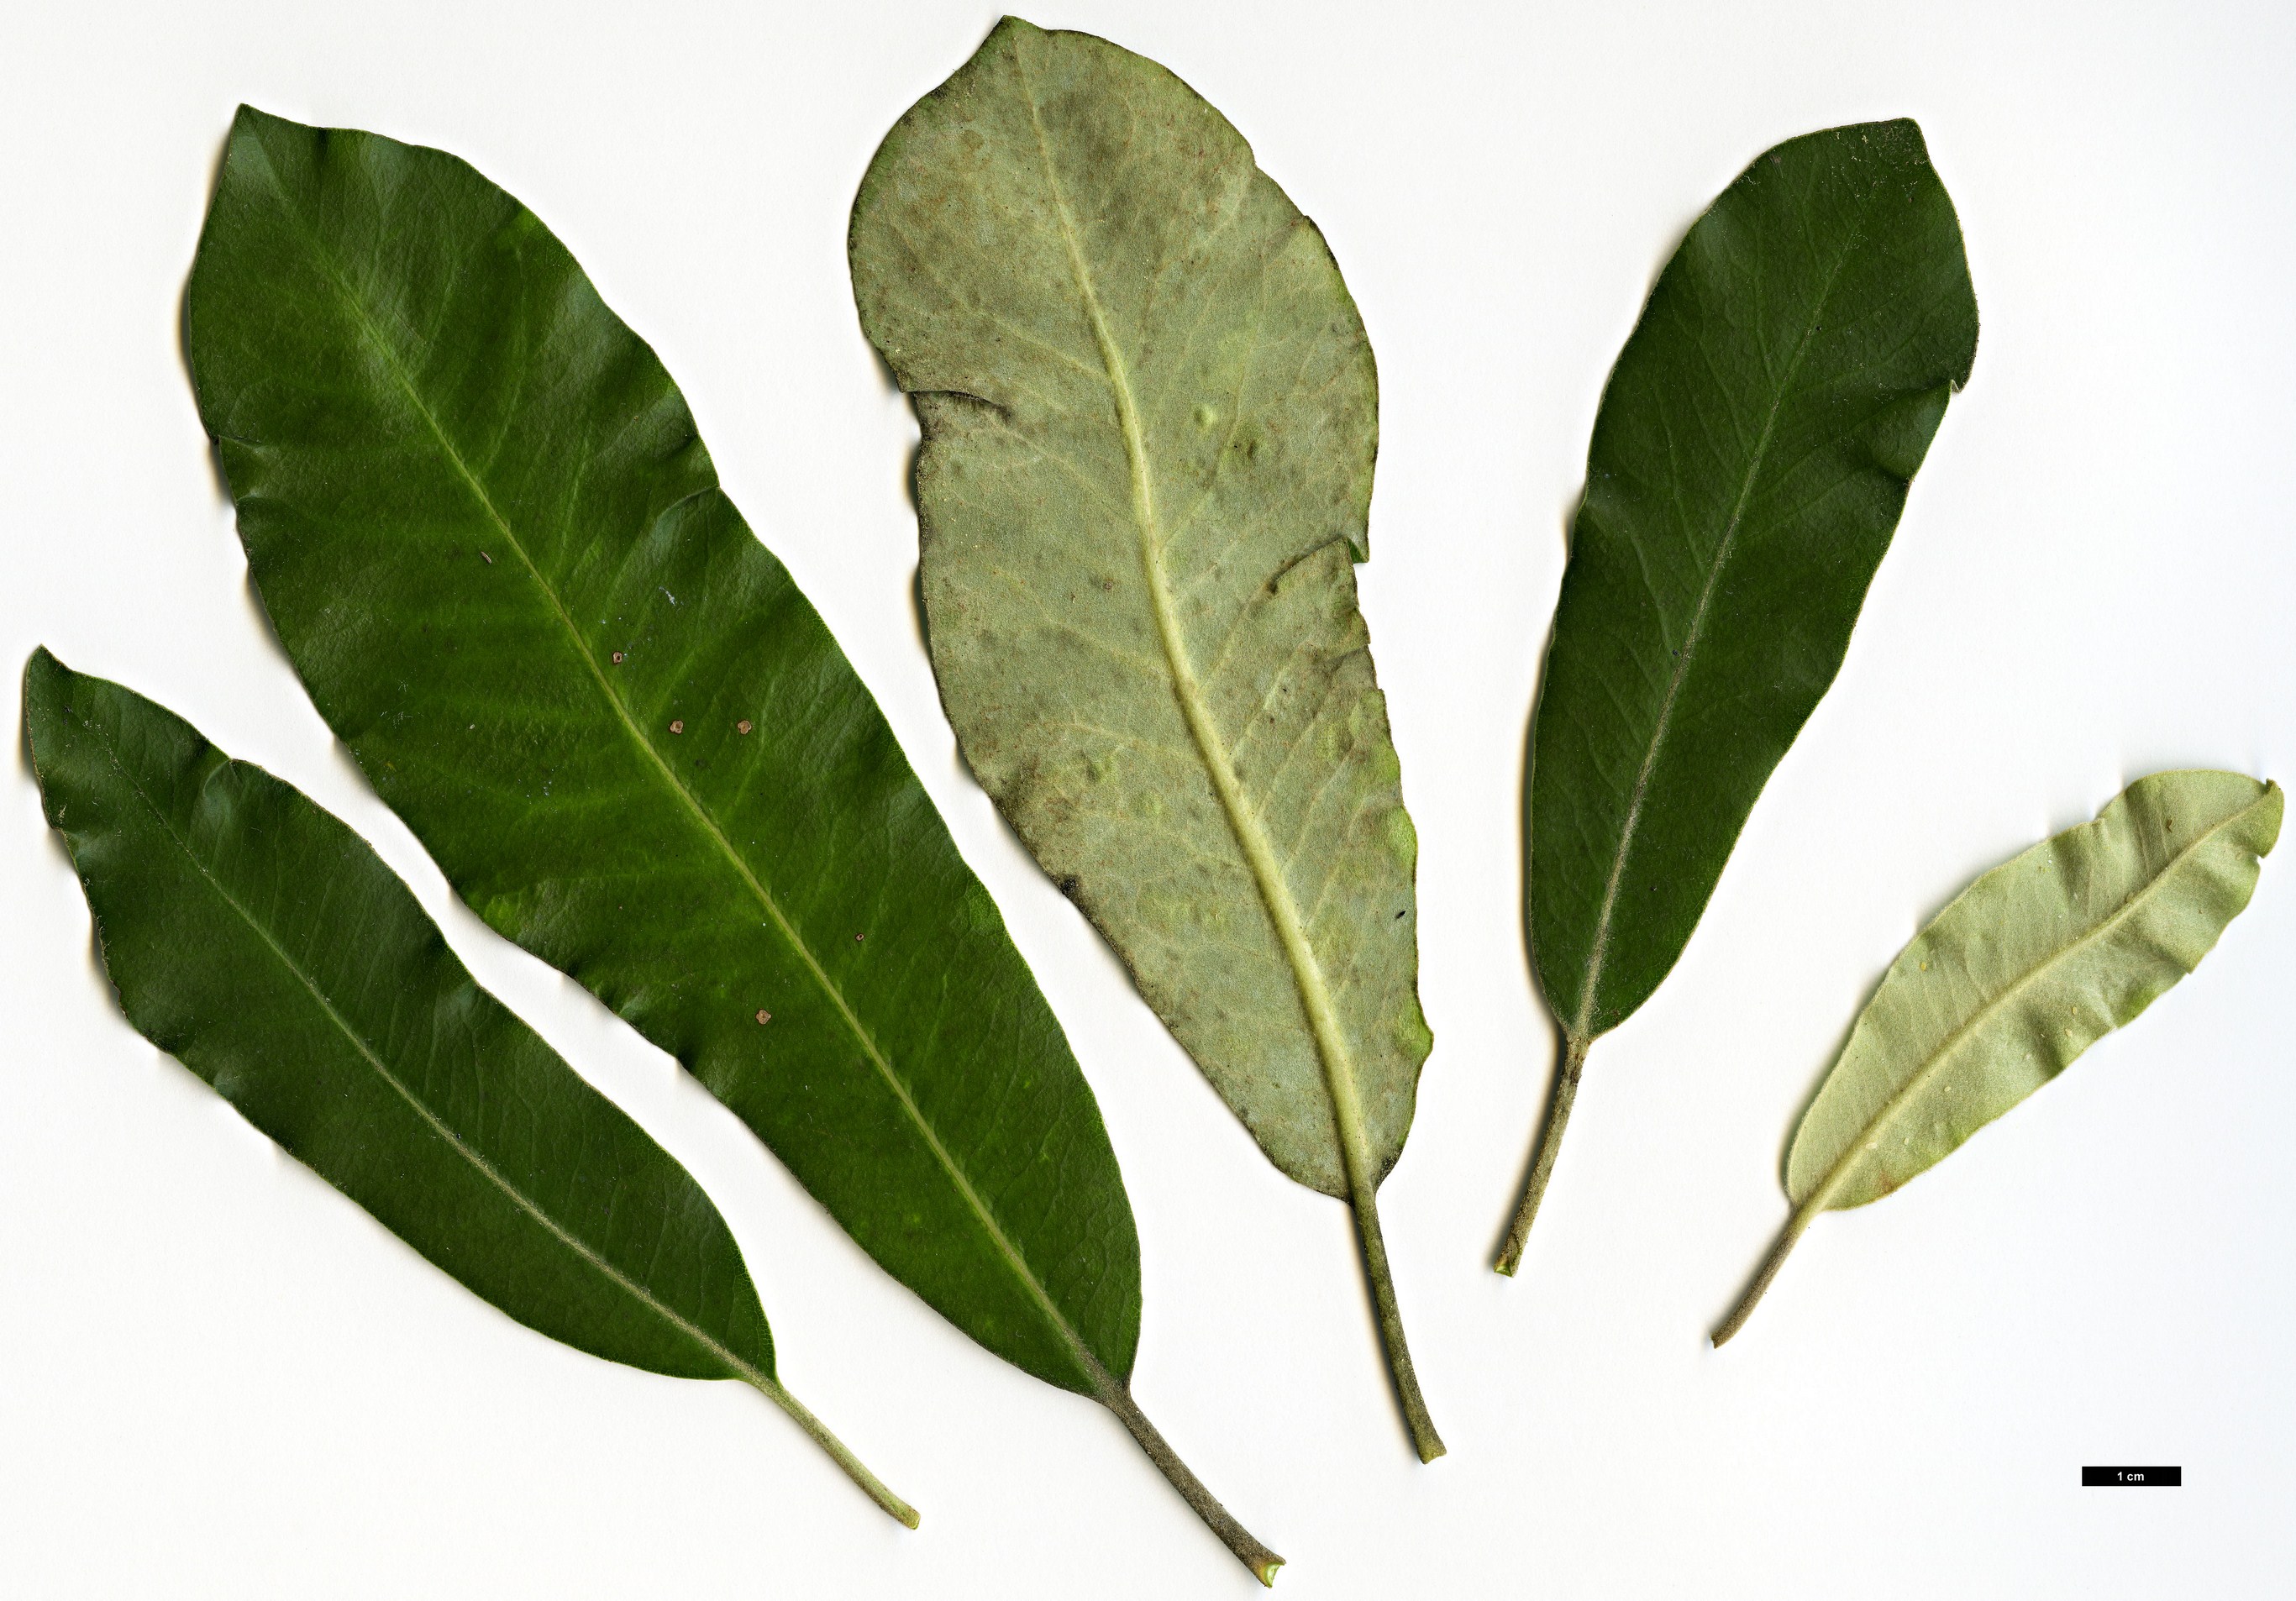 High resolution image: Family: Pittosporaceae - Genus: Pittosporum - Taxon: ralphii